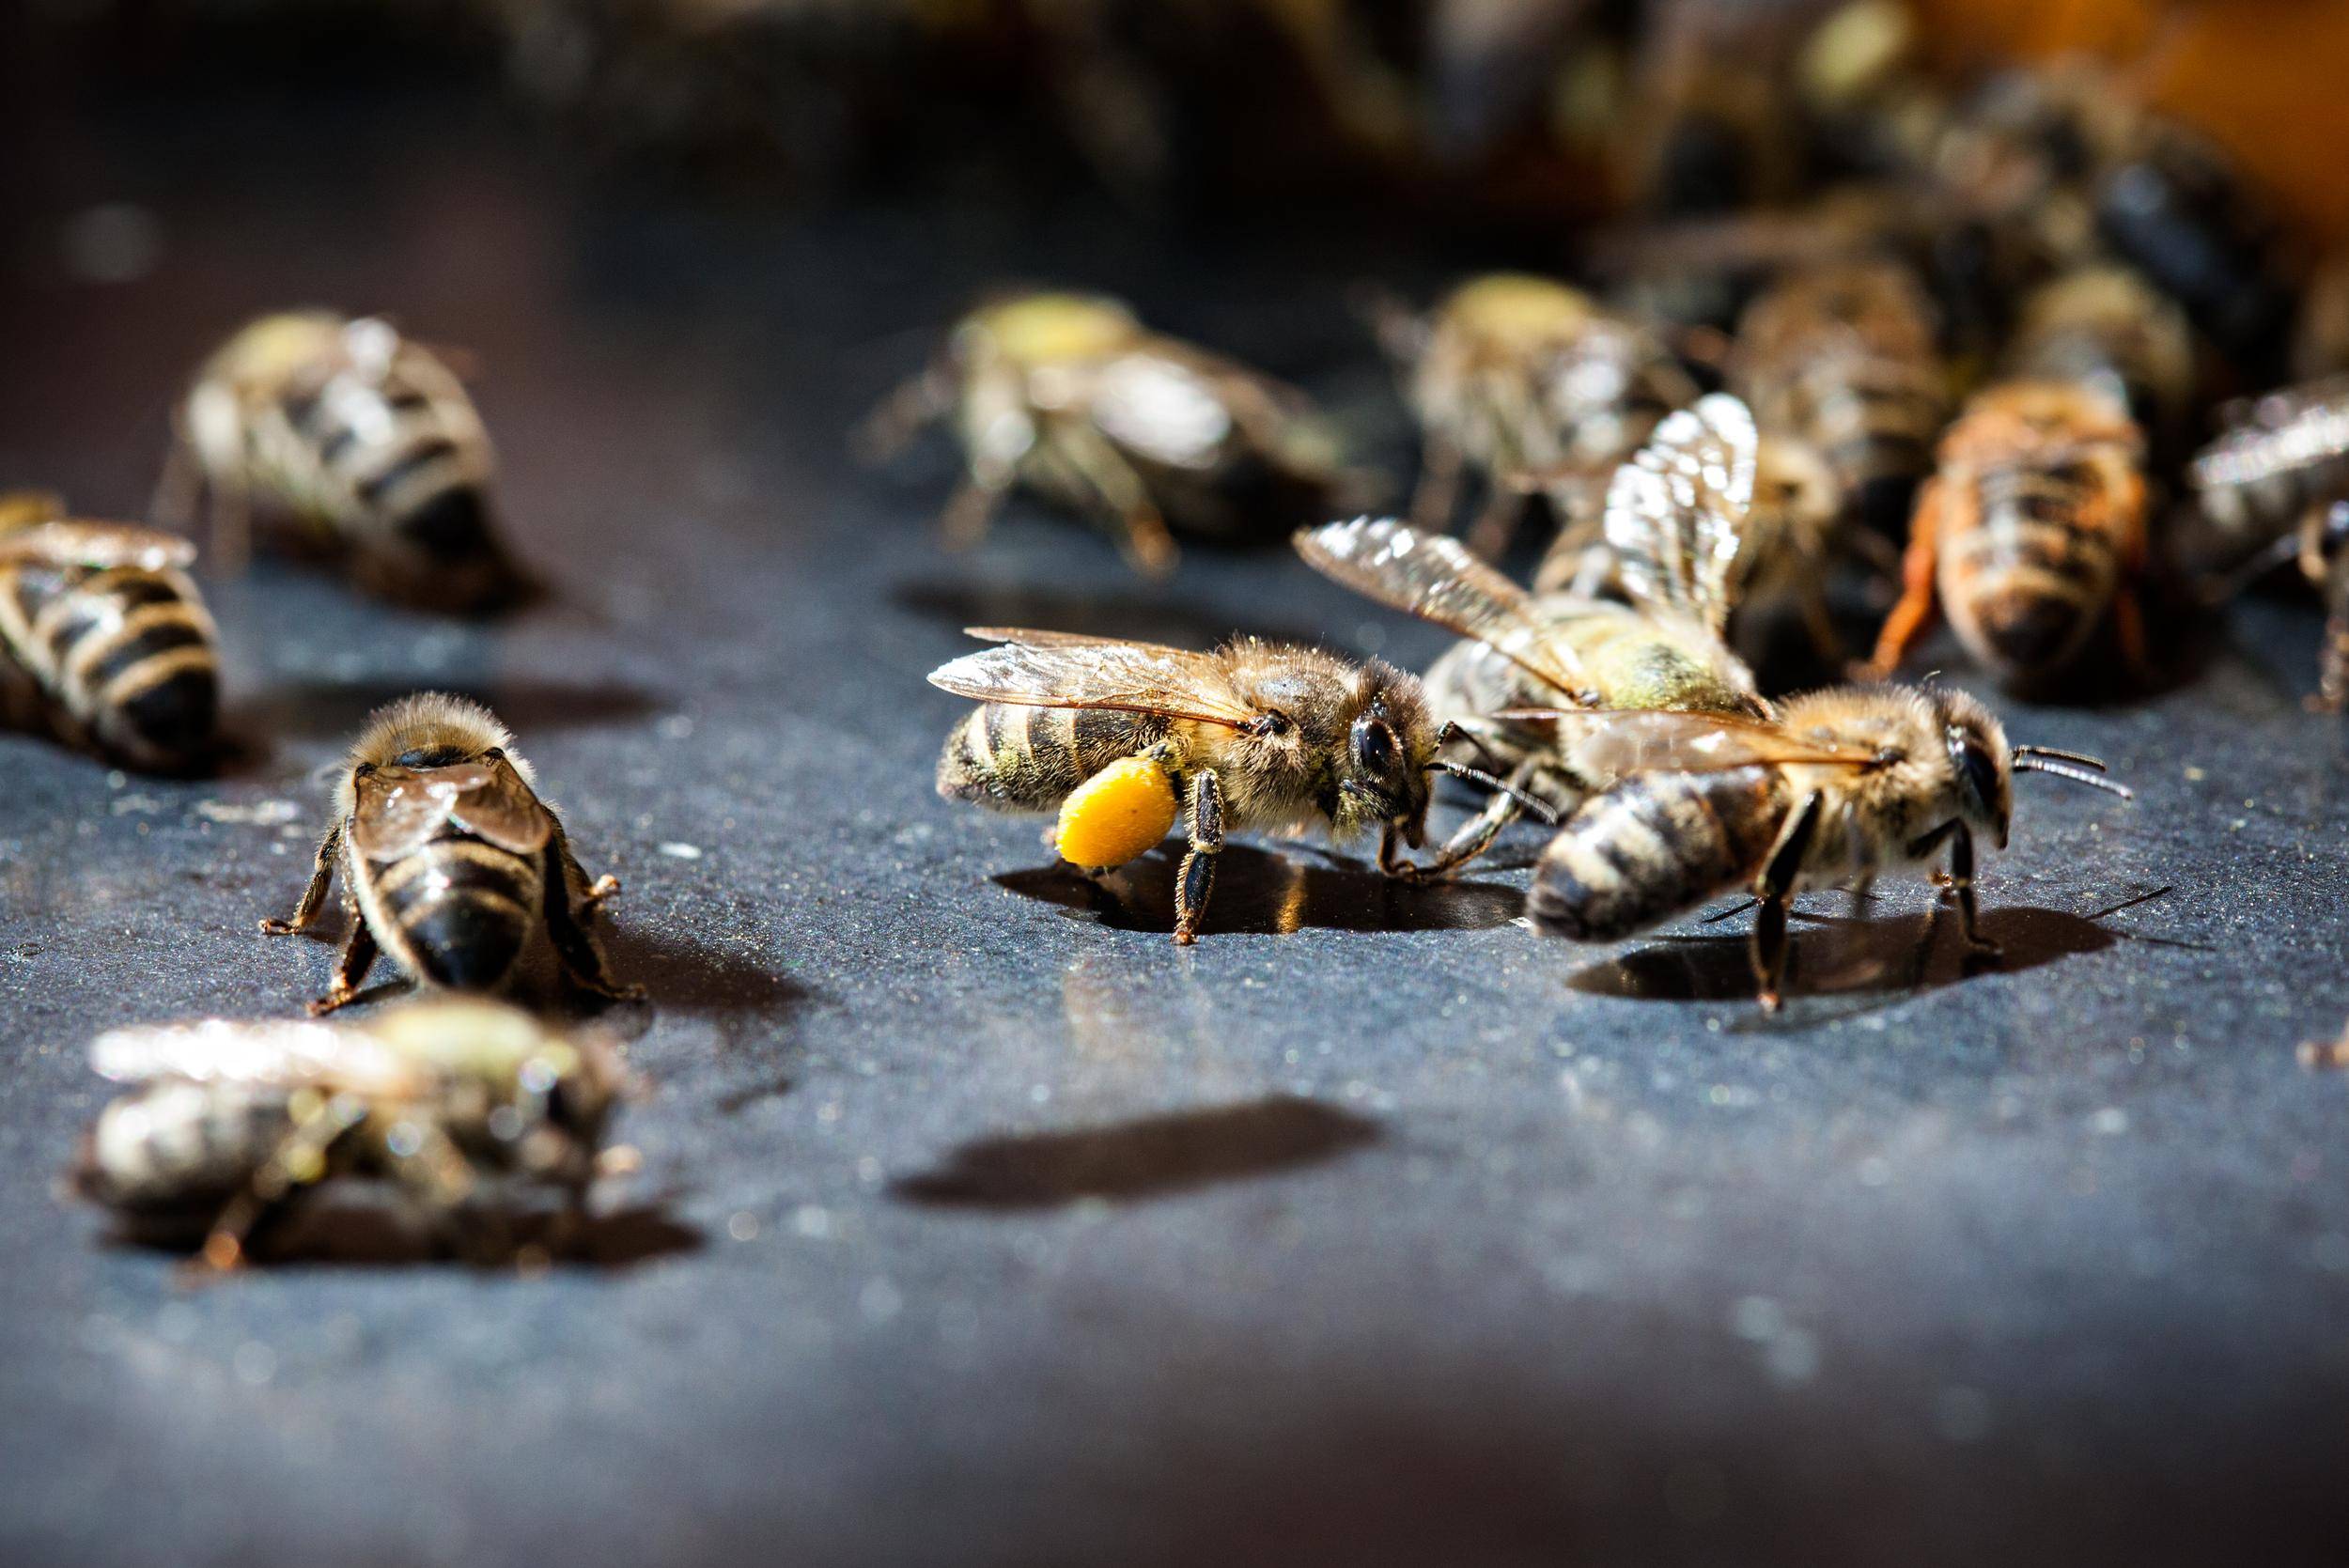 Close up of honeybees with pollen.
Nahaufnahme von Honigbienen mit Pollen.